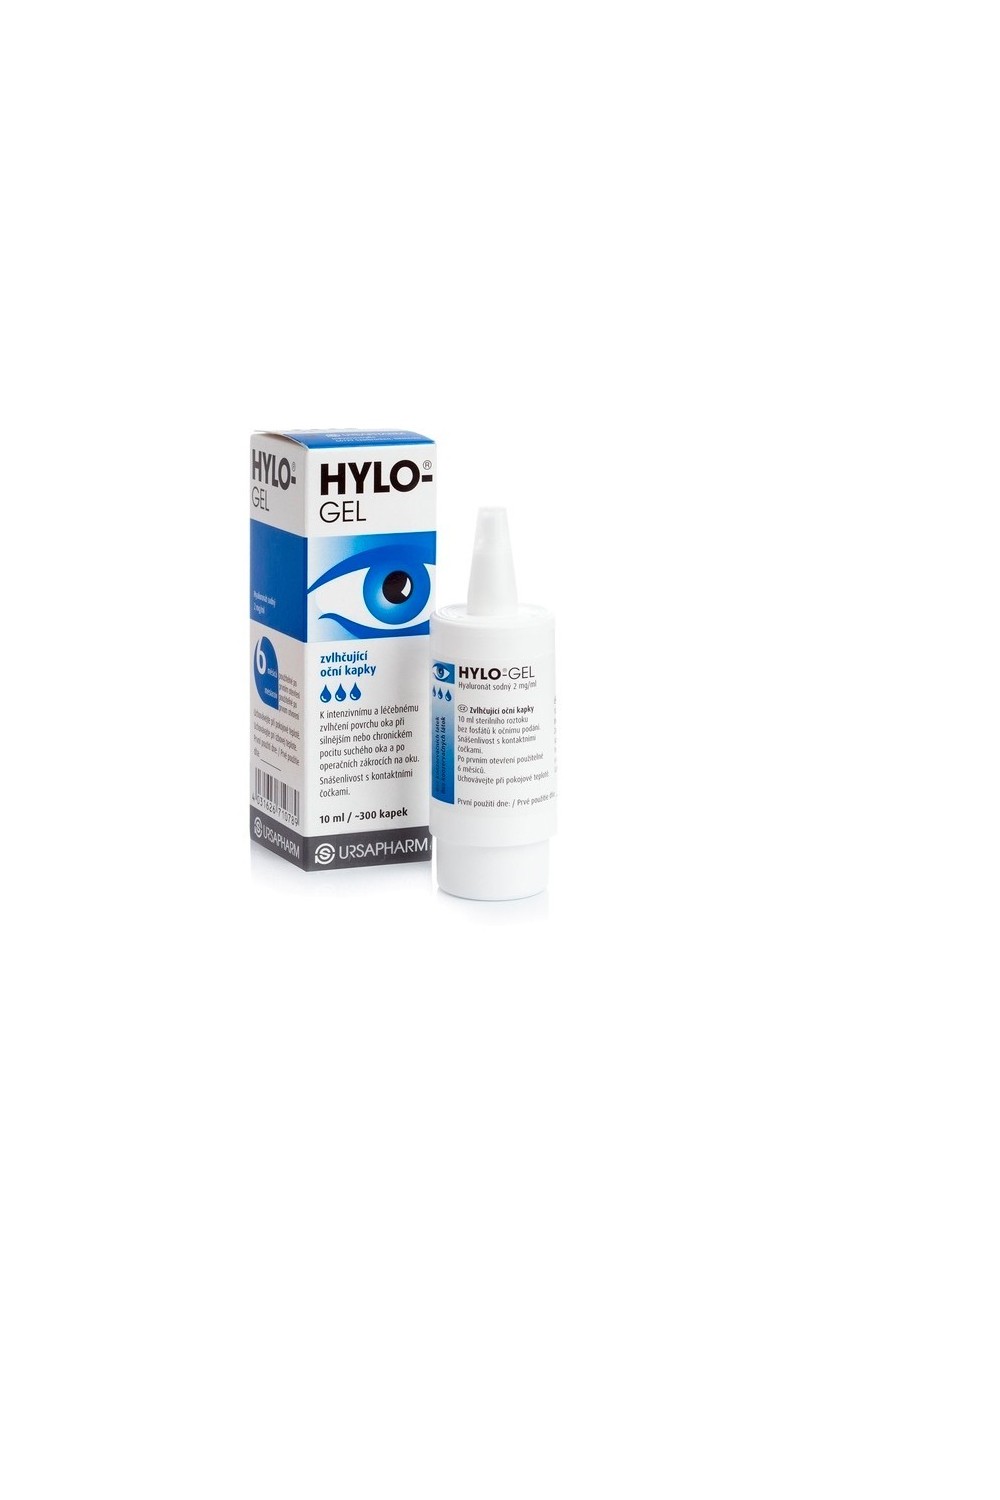 Brill Pharma Hylo Gel Lubricant Eye Drops 10ml